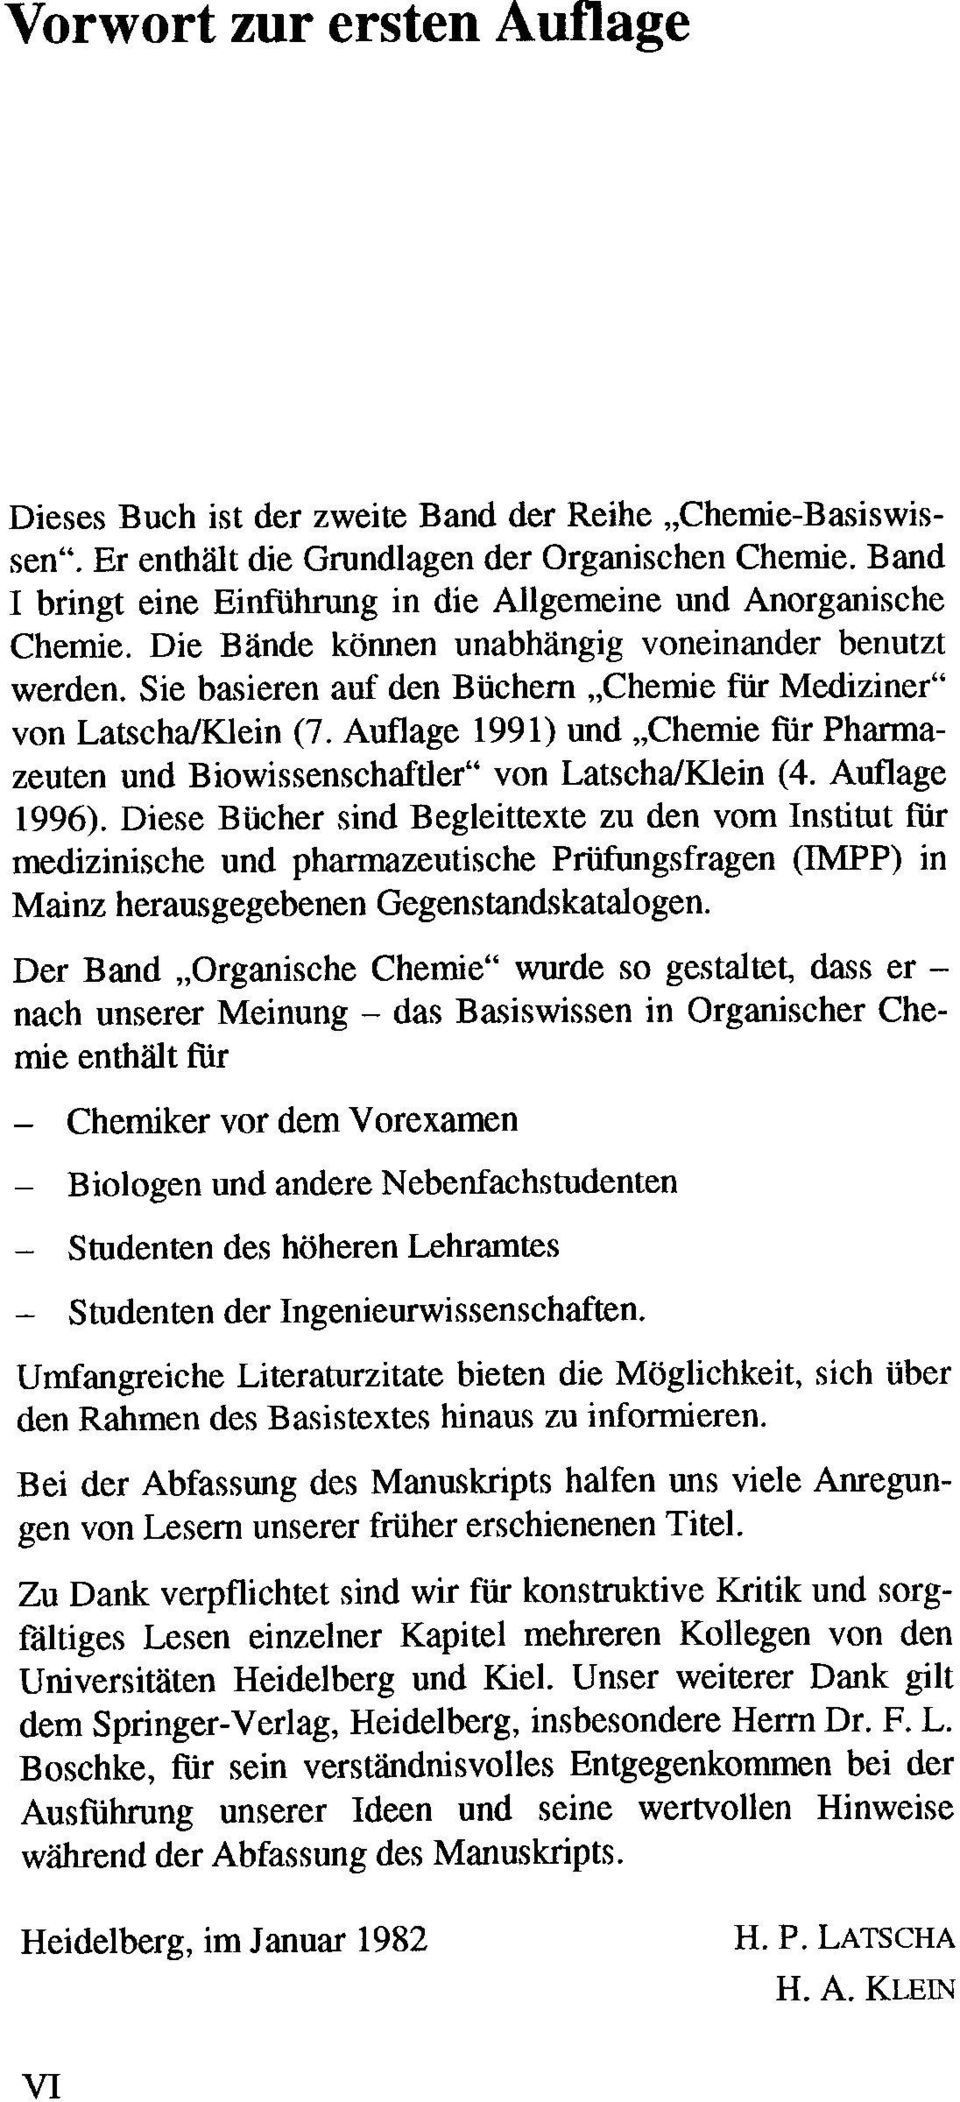 Sie basieren auf den Büchern "Chemie für Mediziner" von LatschalKlein (7. Auflage 1991) und "Chemie für Pharmazeuten und Biowissenschaftler" von LatschalKlein (4. Auflage 1996).